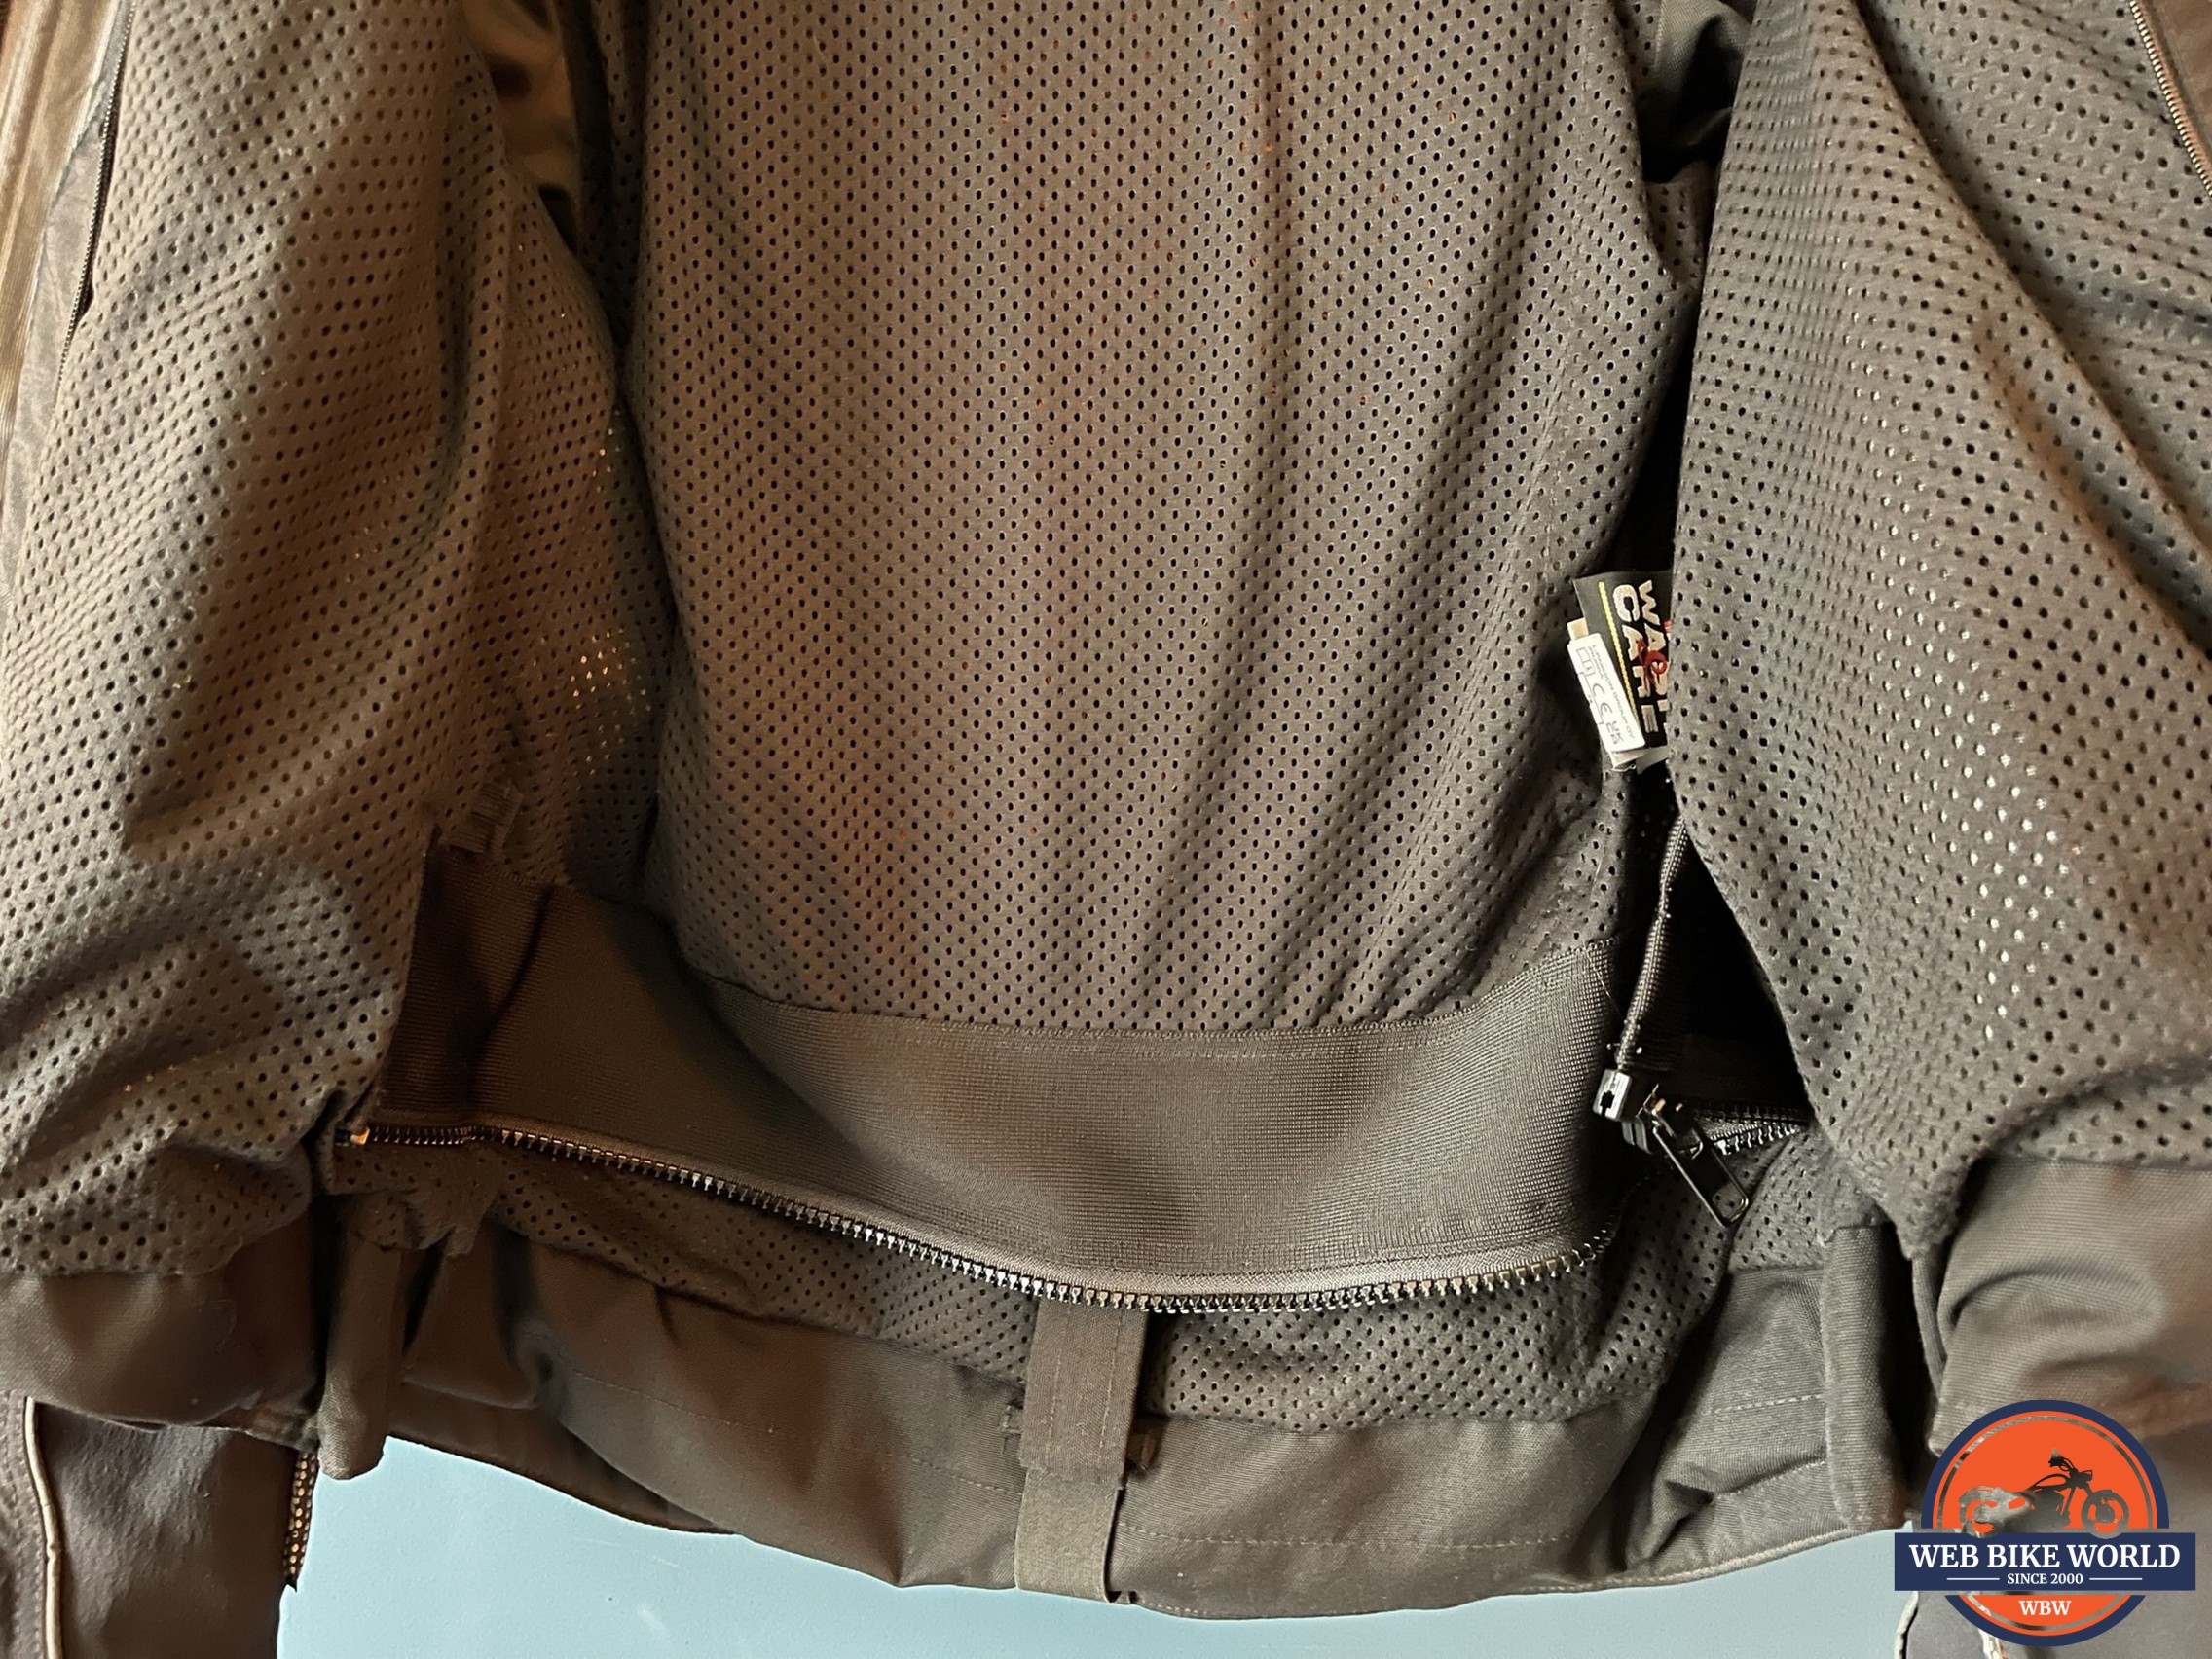 Jacket zip connector for the Rukka Comforina pants